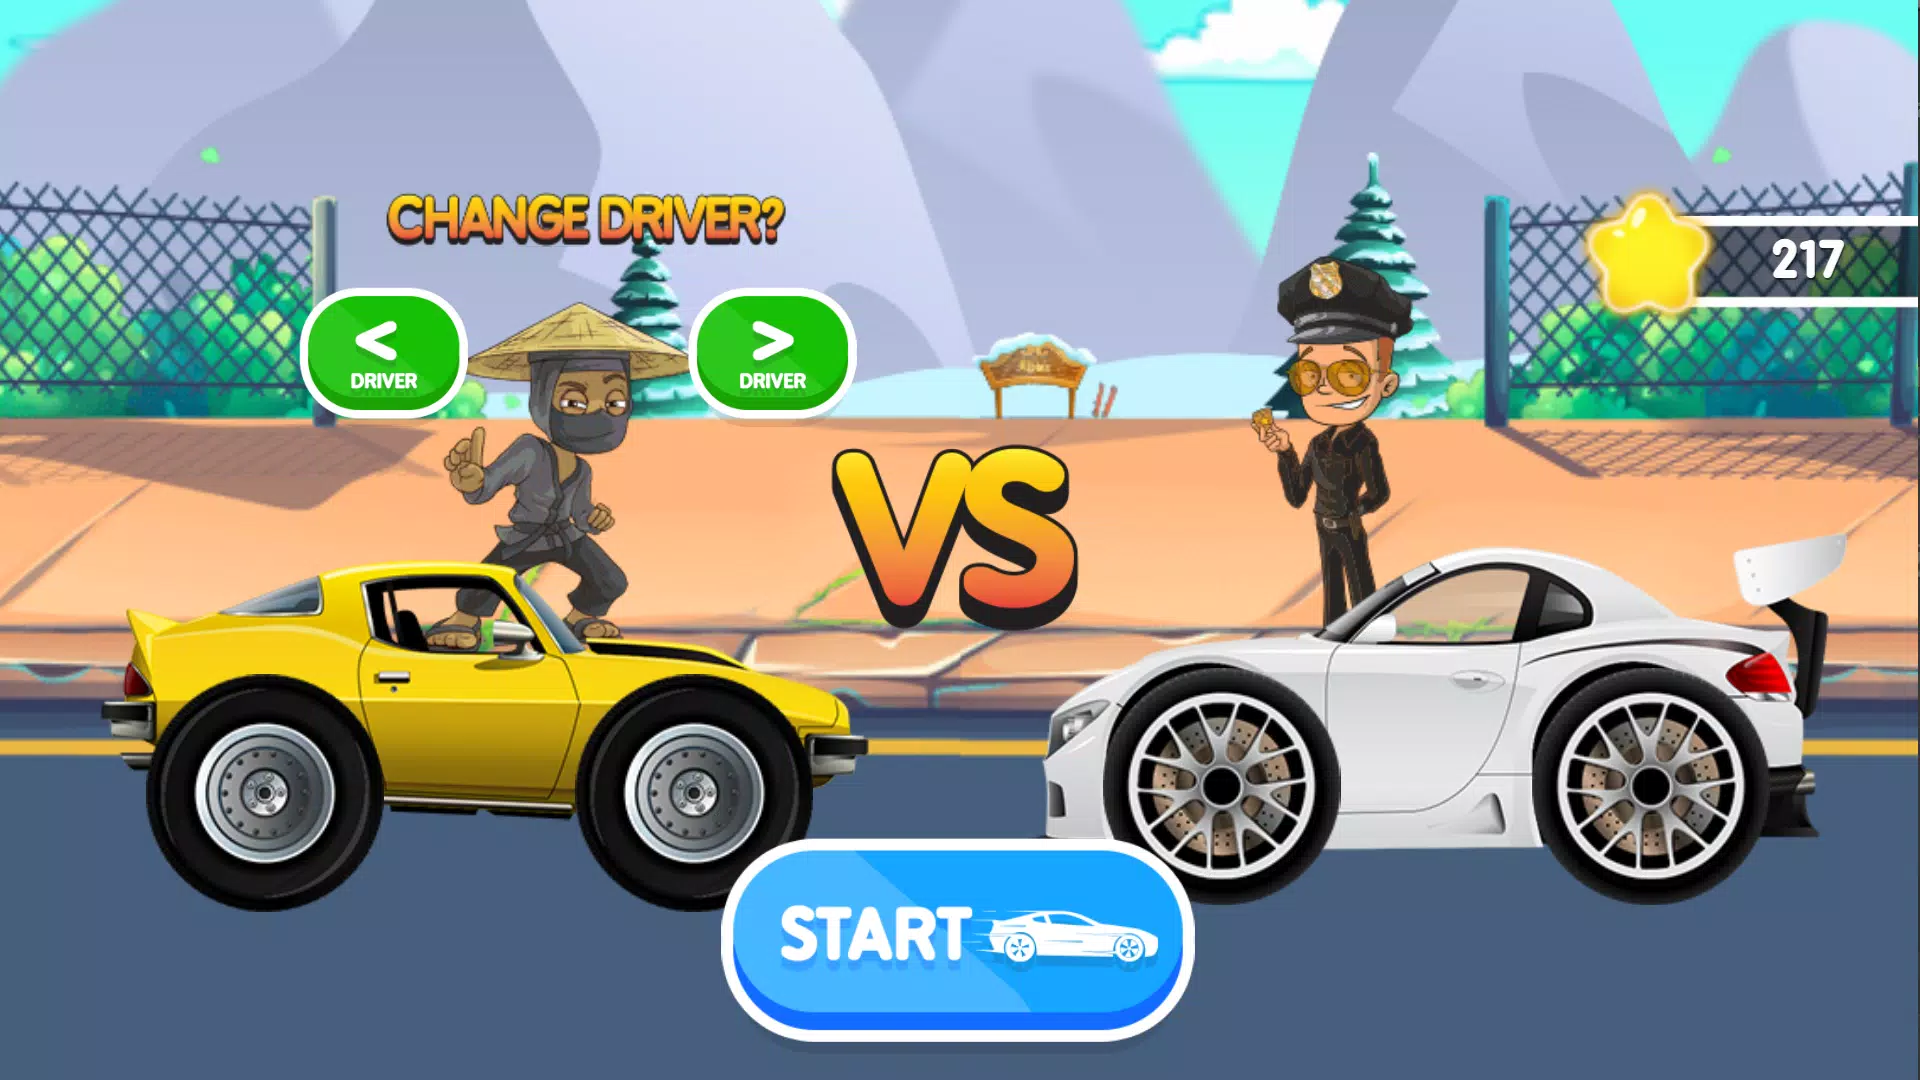 Download do APK de Crie carros jogo para criança para Android